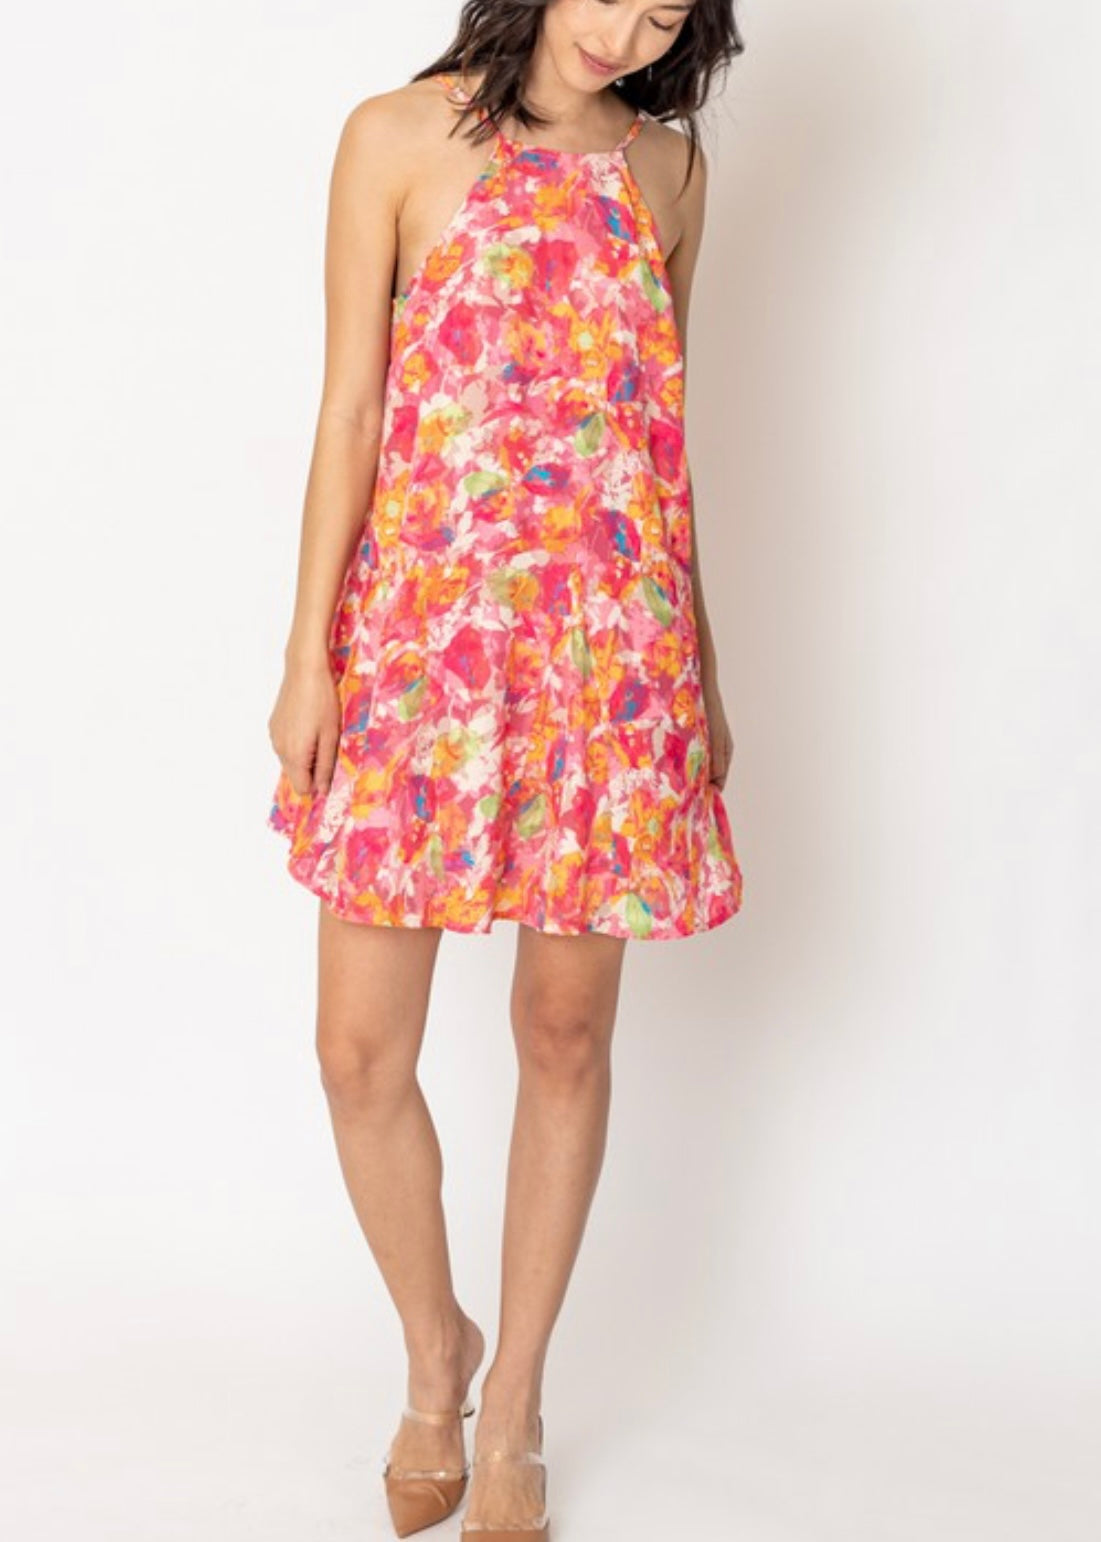 The halter floral dress